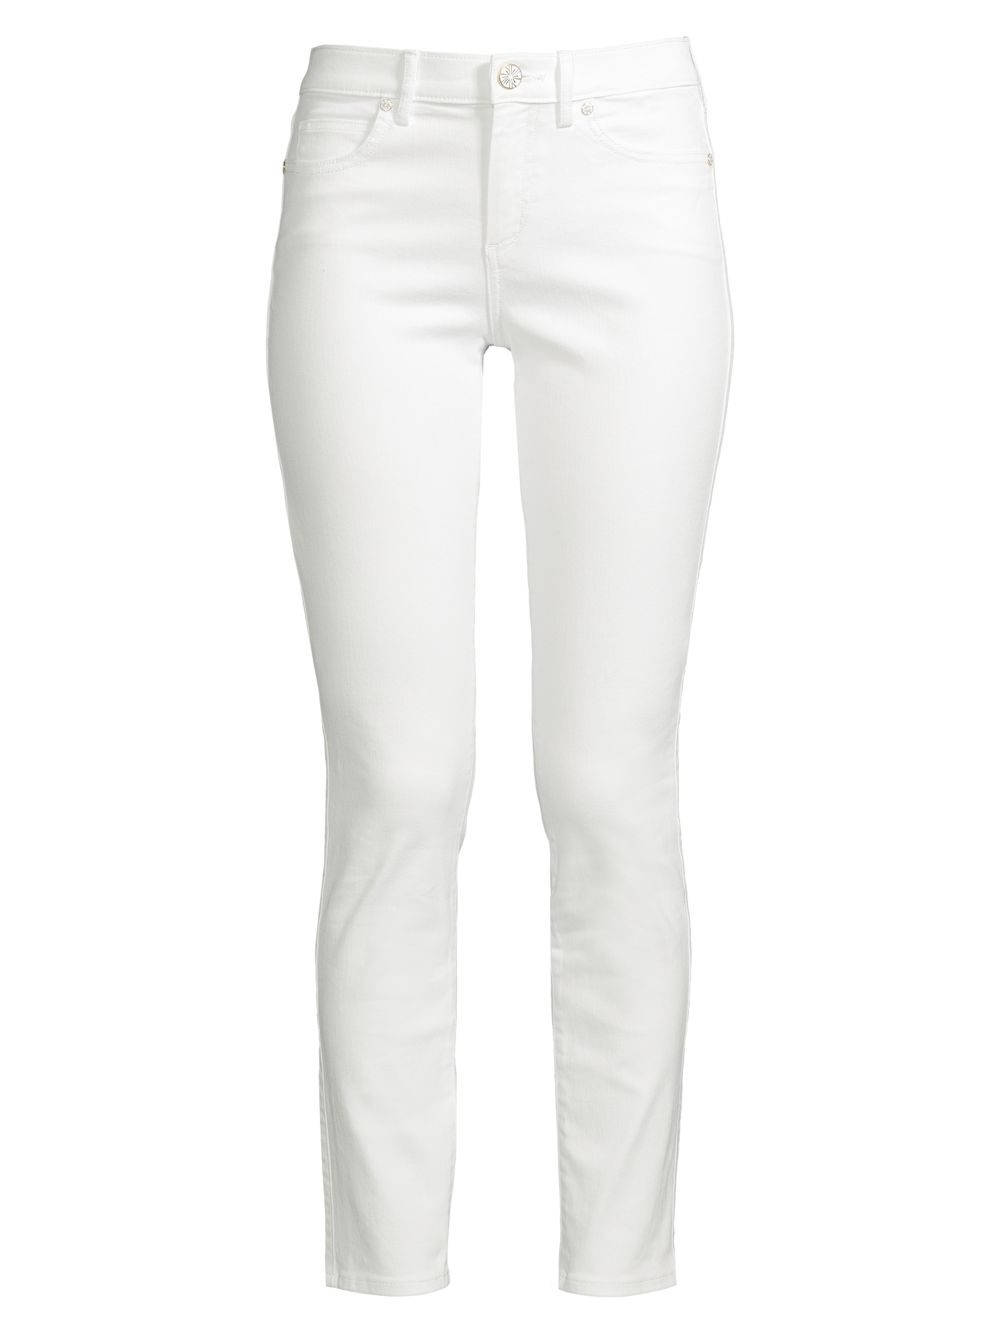 Эластичные джинсы с высокой посадкой South Ocean Lilly Pulitzer, белый